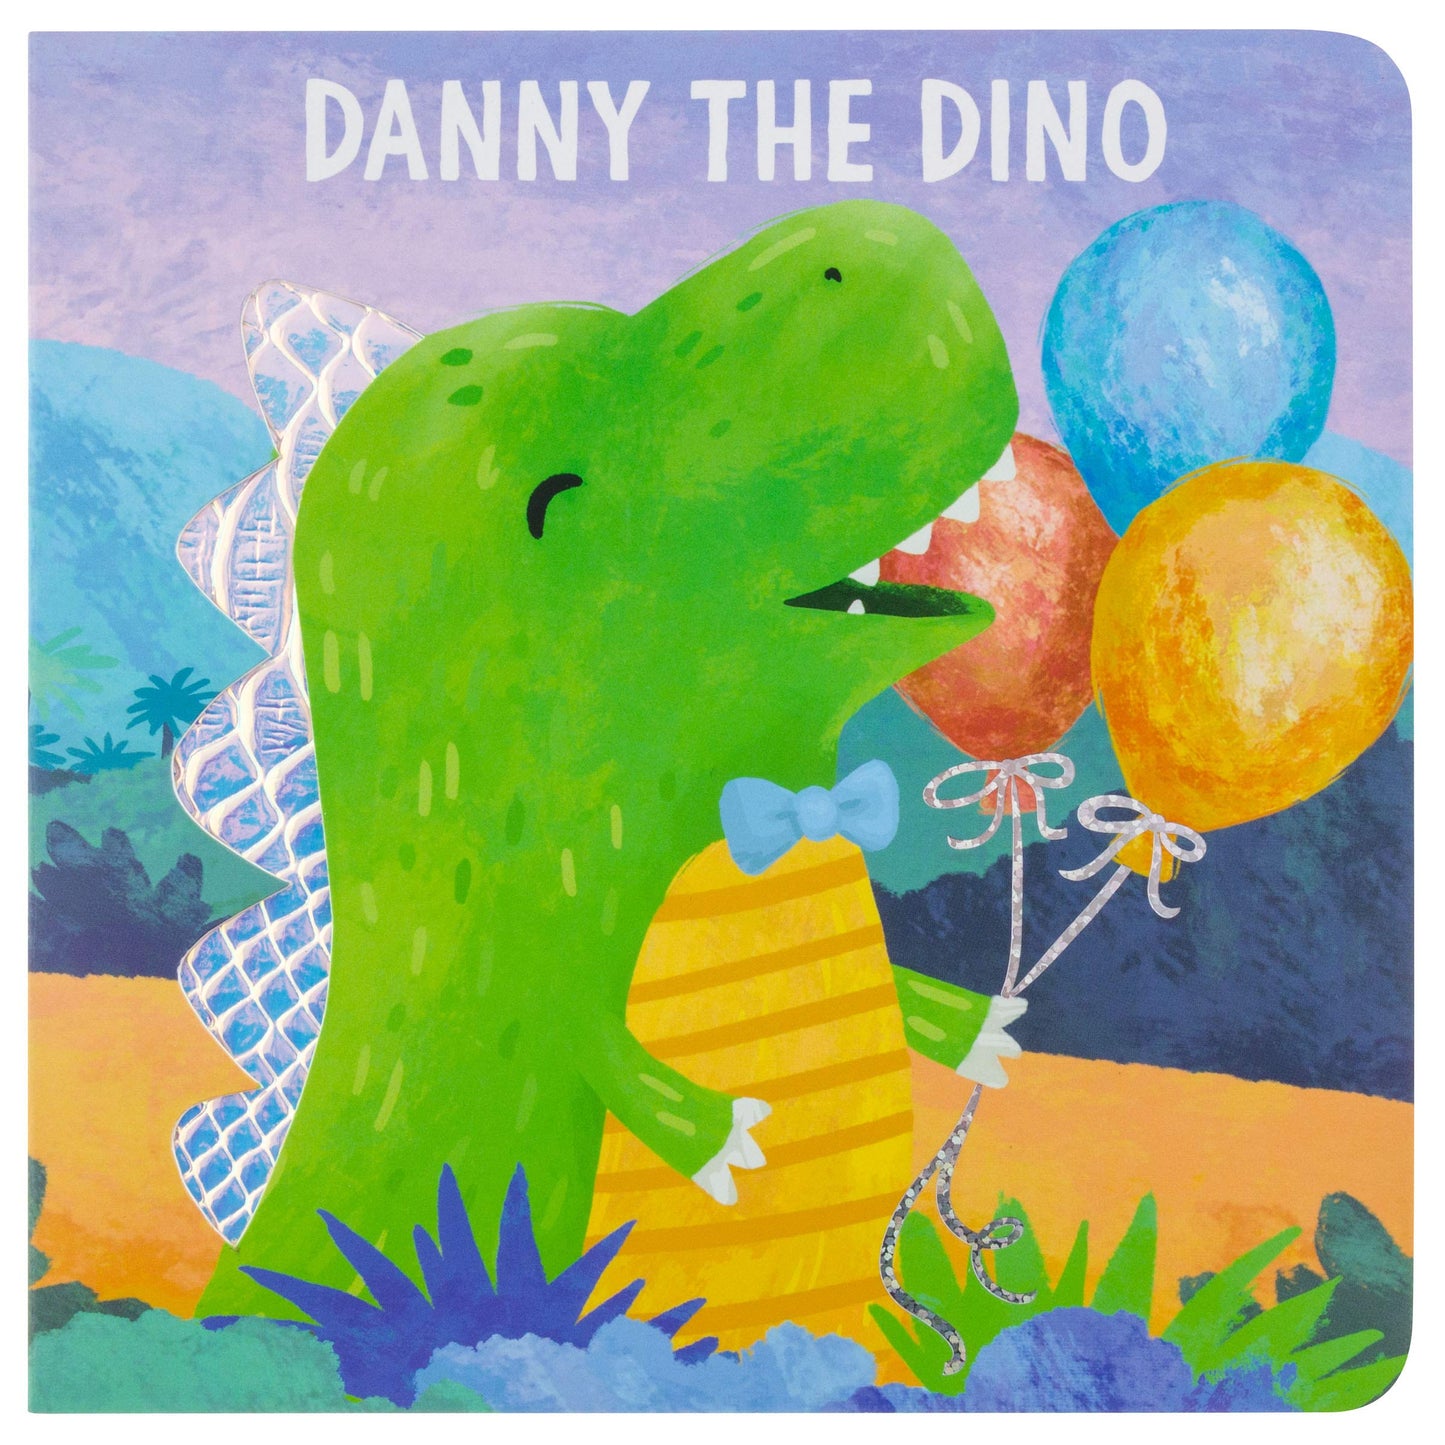 Danny the Dino Book